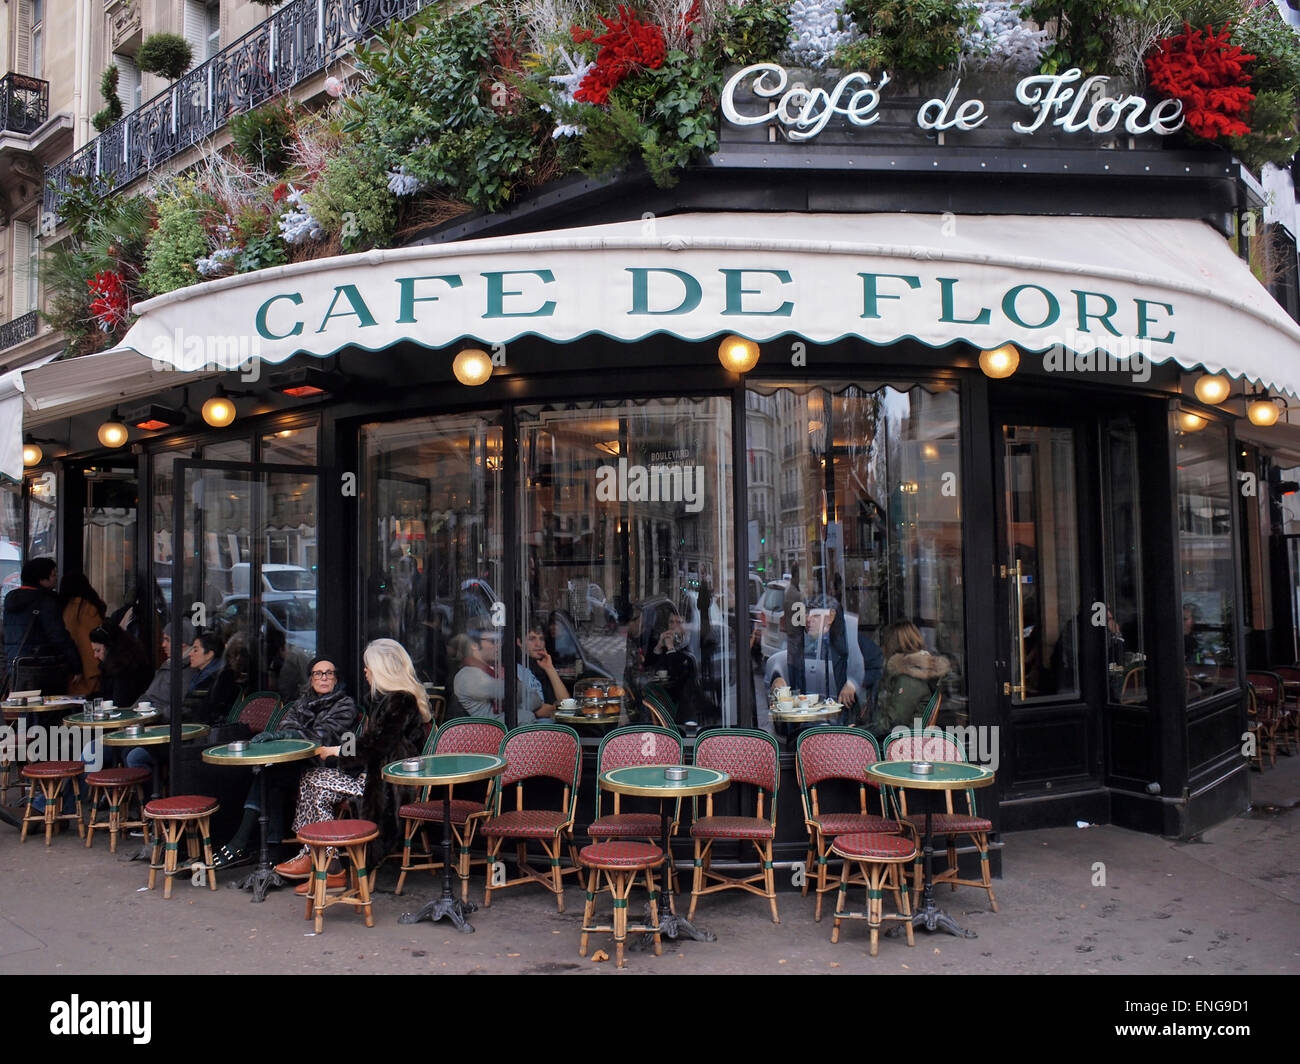 The famous Cafe de Flore in Saint Germain, Paris Stock Photo